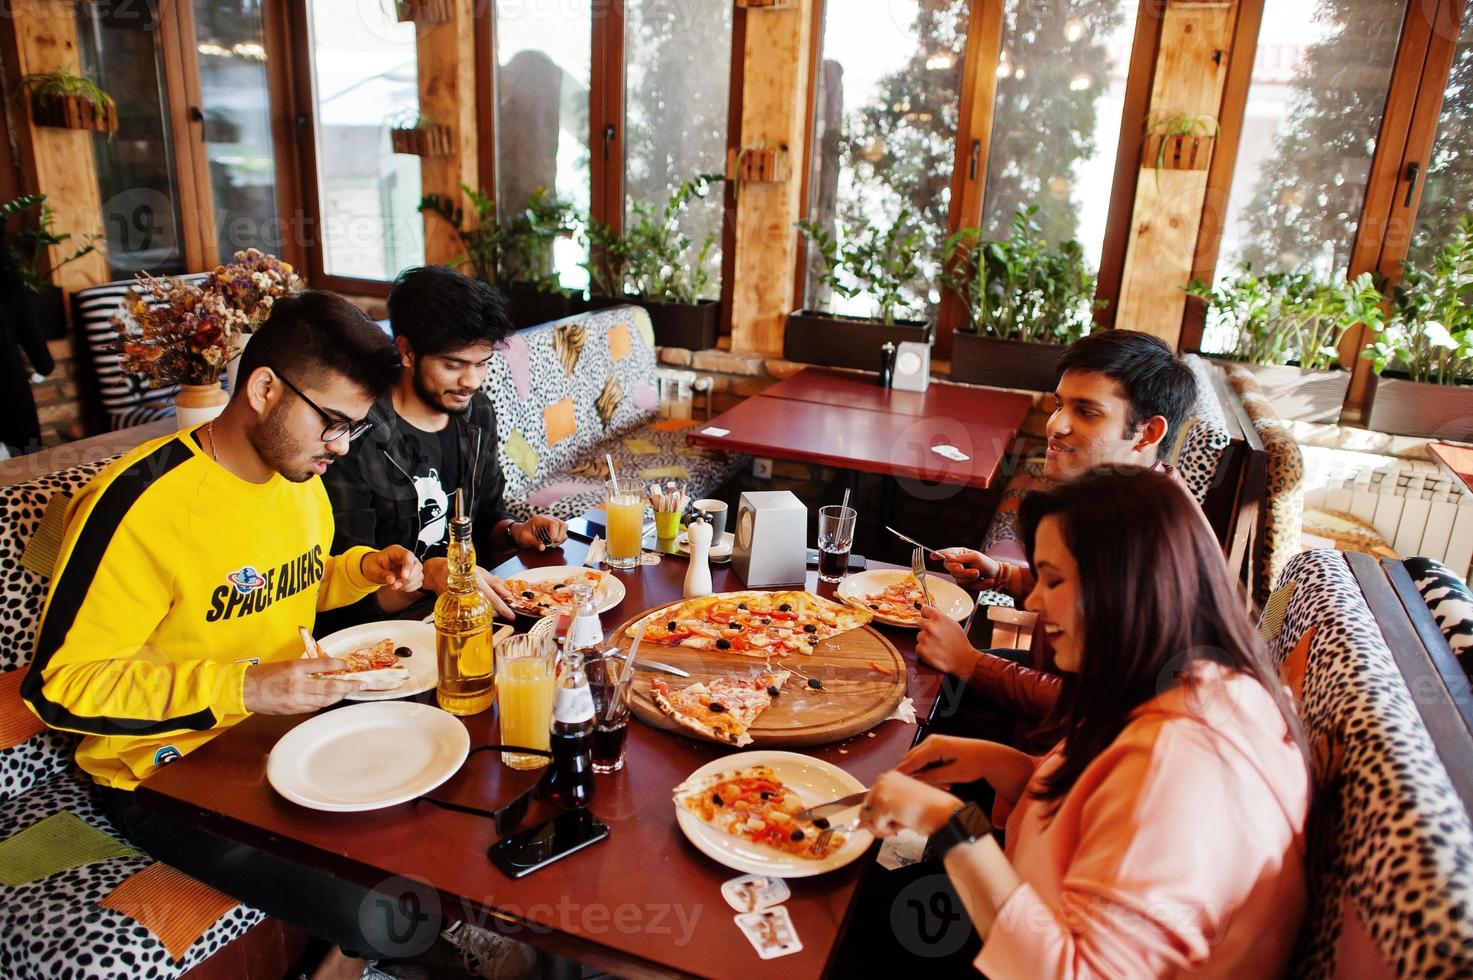 grupo de amigos asiáticos comiendo pizza durante la fiesta en la pizzería. gente india feliz divirtiéndose juntos, comiendo comida italiana y sentados en el sofá. foto